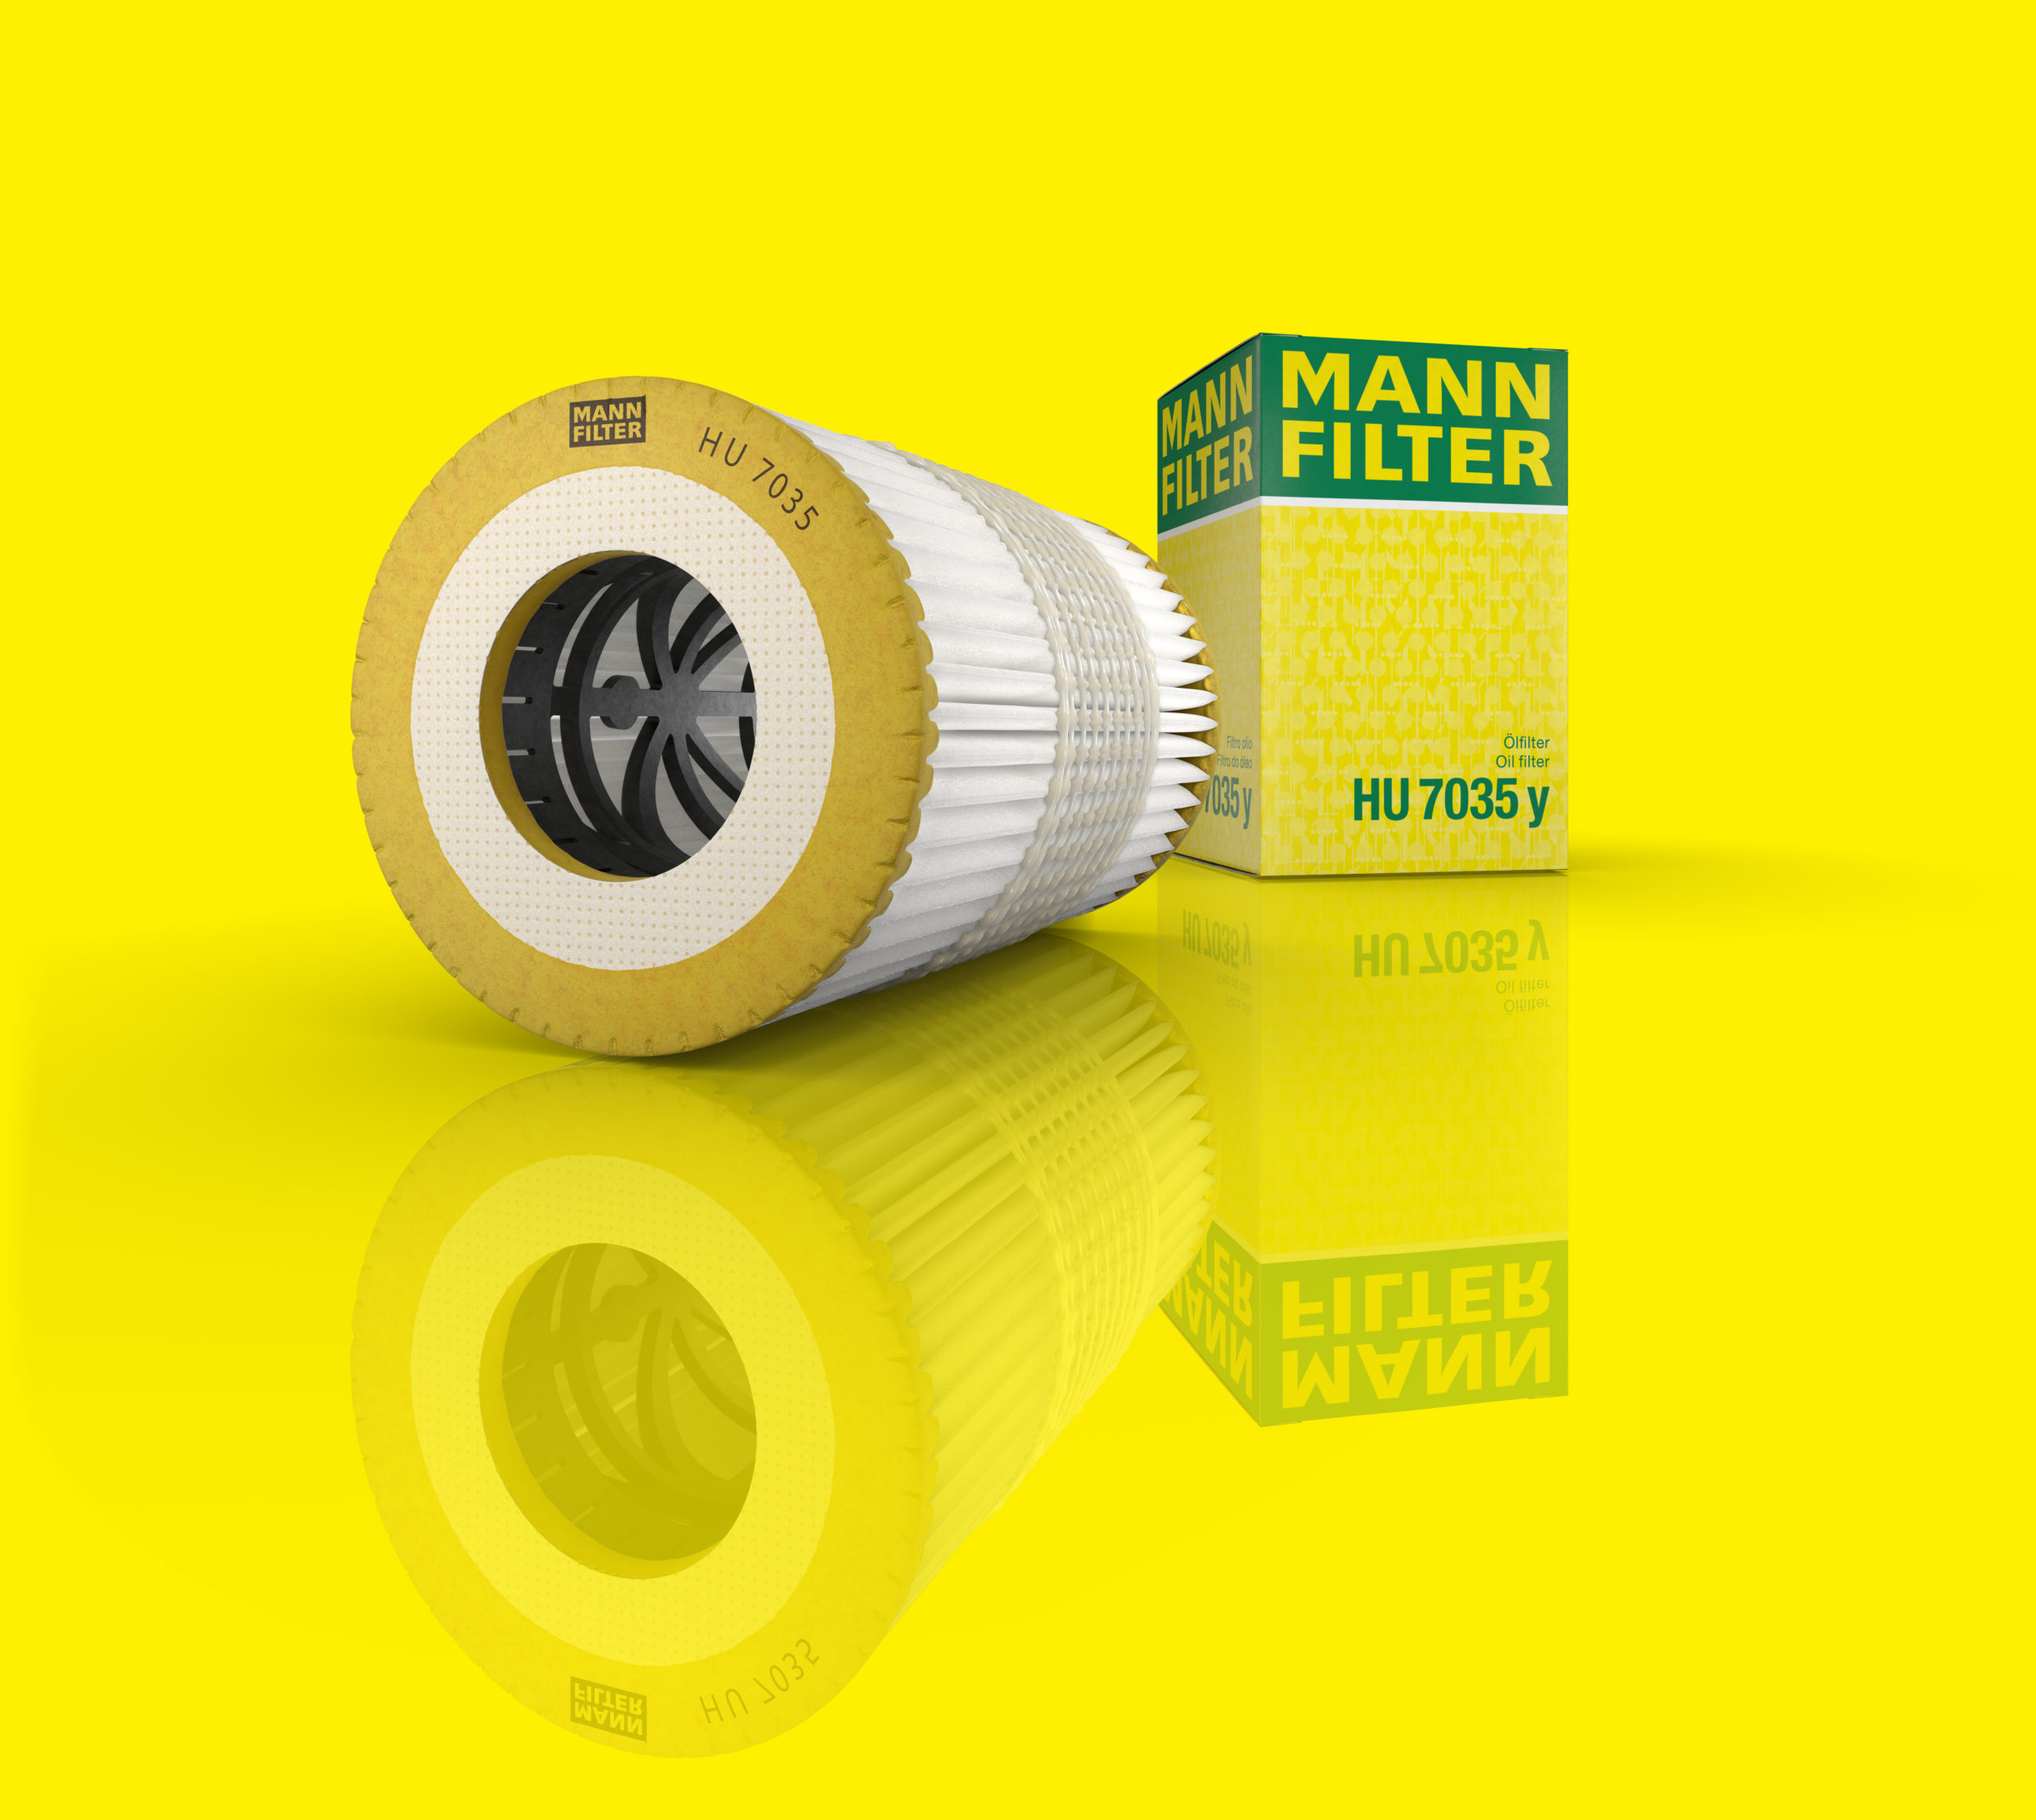 Ein länglicher Filter mit gelben Akkzent vor gelben Hintergrund und spiegelnder Boden neben der Verpackung